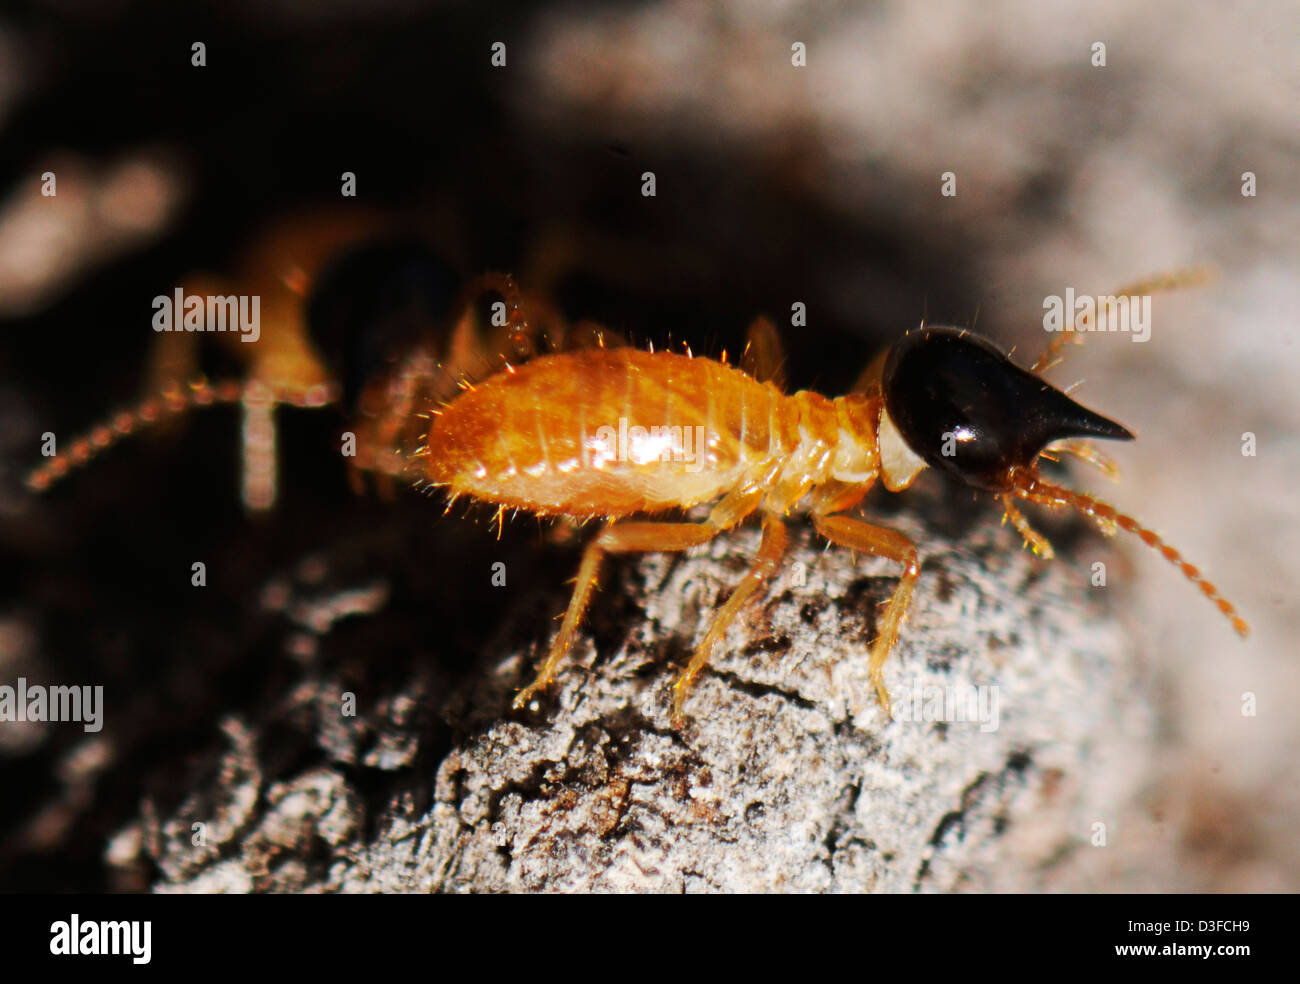 Soldados Nasutitermes corniger, una especie de termita arbórea Foto de stock